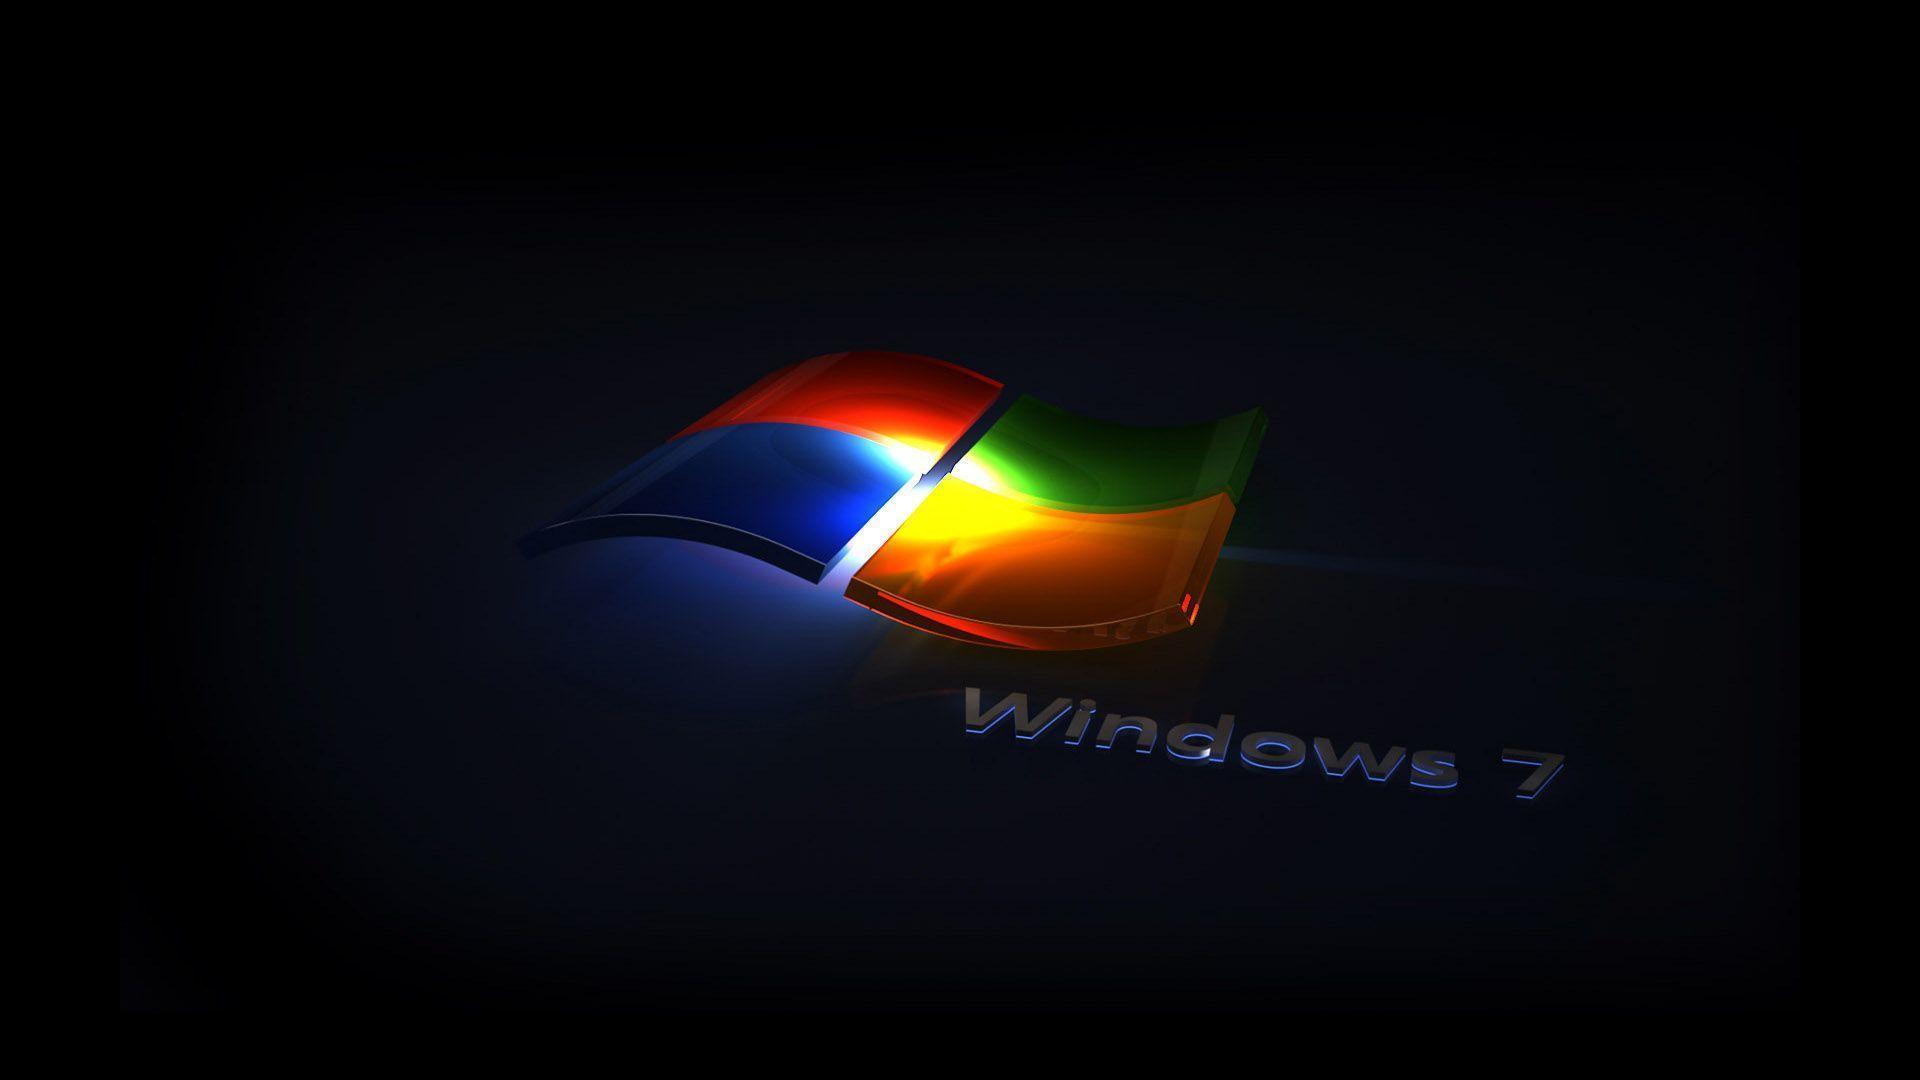 Windows 7 3D wallpaper